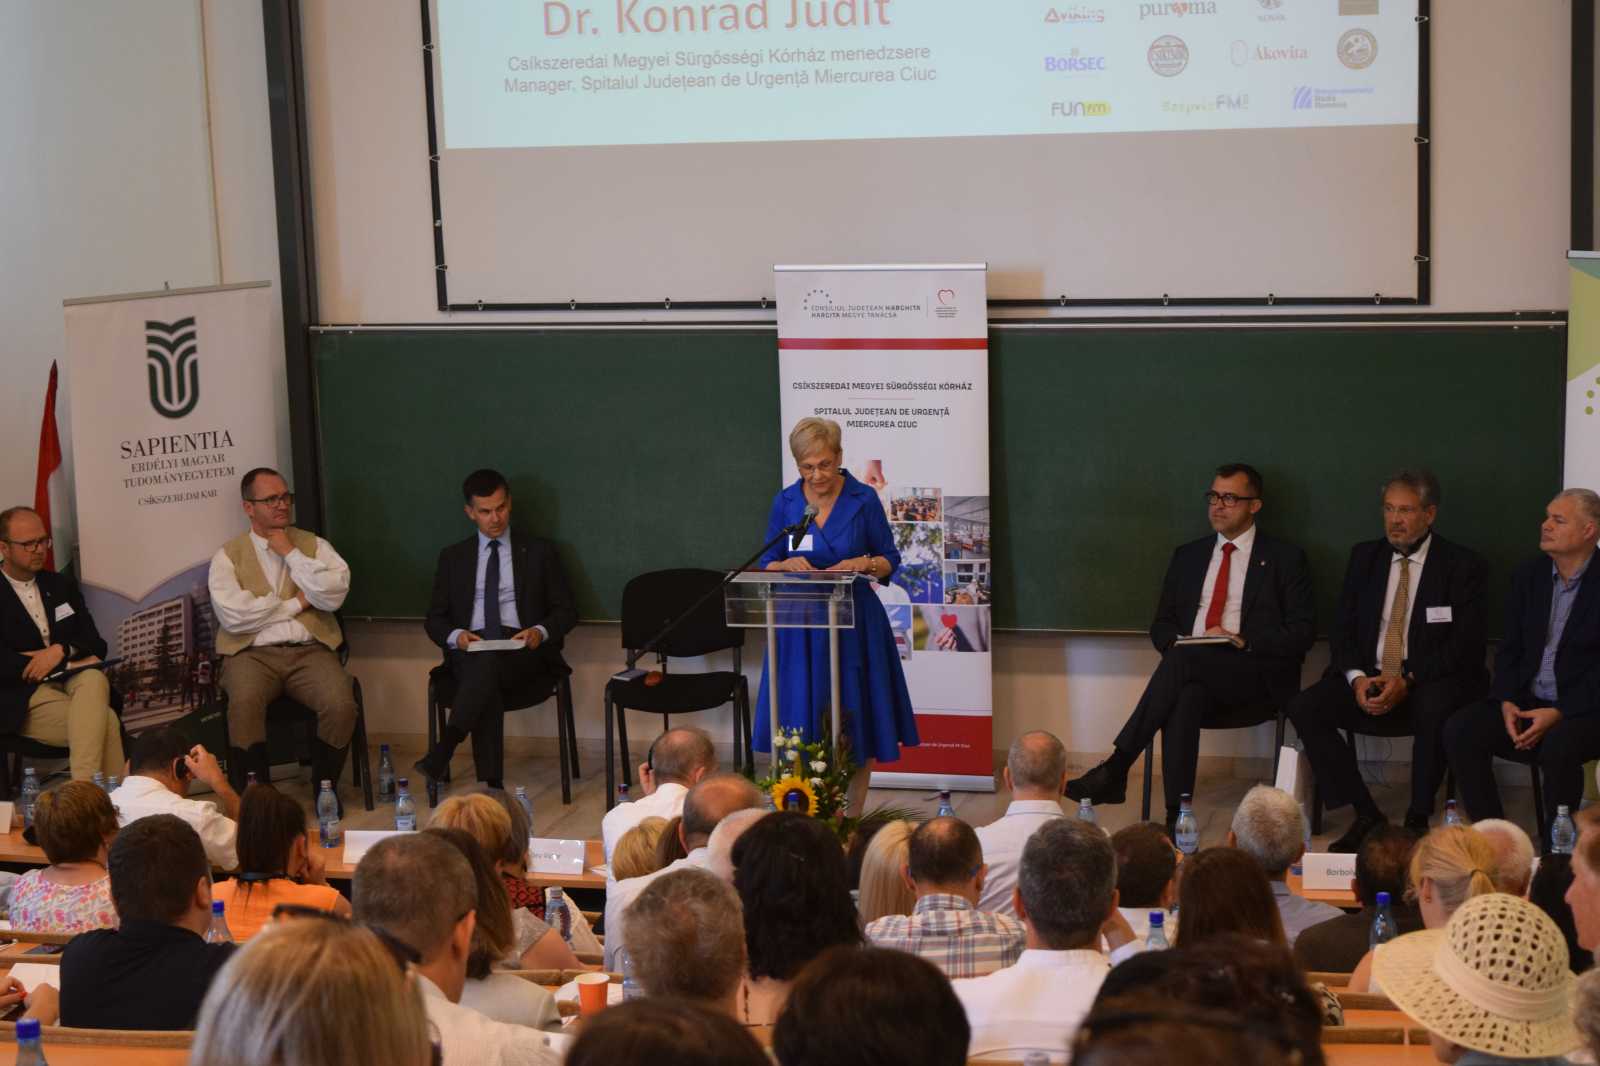 Dr. Konrád Judit kórházmenedzser köszöntötte elsőként az egybegyűlteket | A szerző felvételei